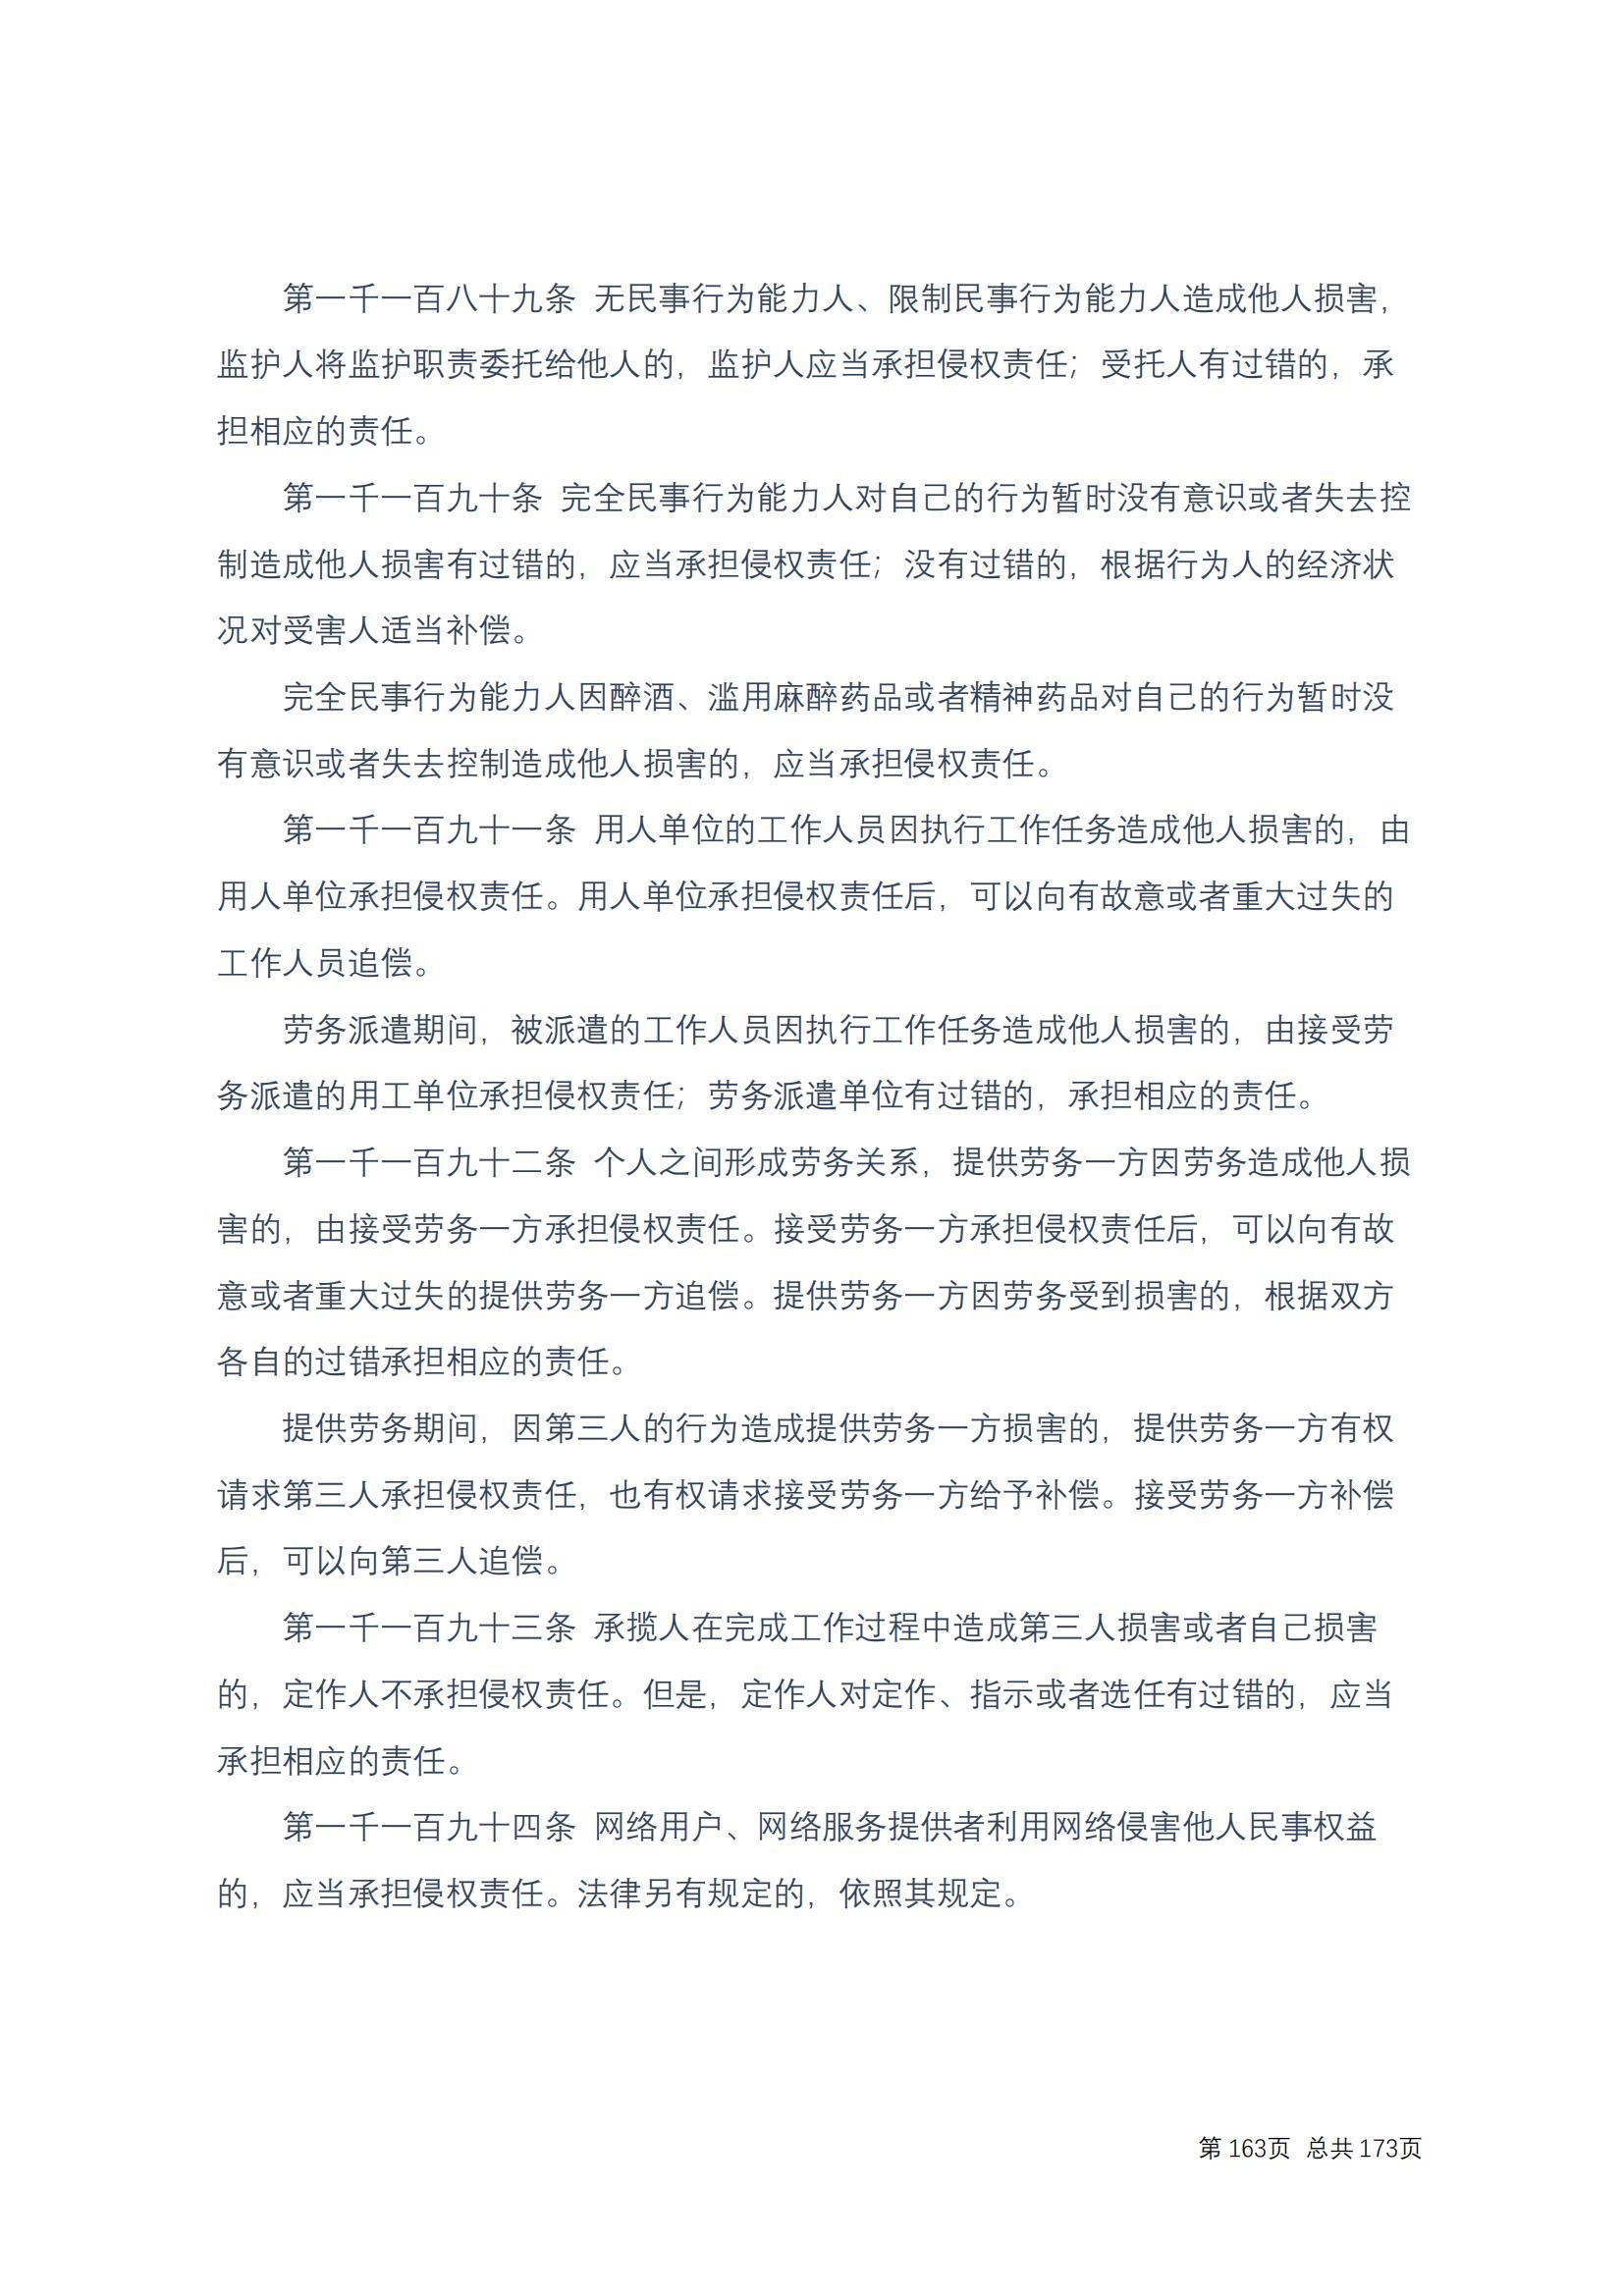 中华人民共和国民法典 修改过_162